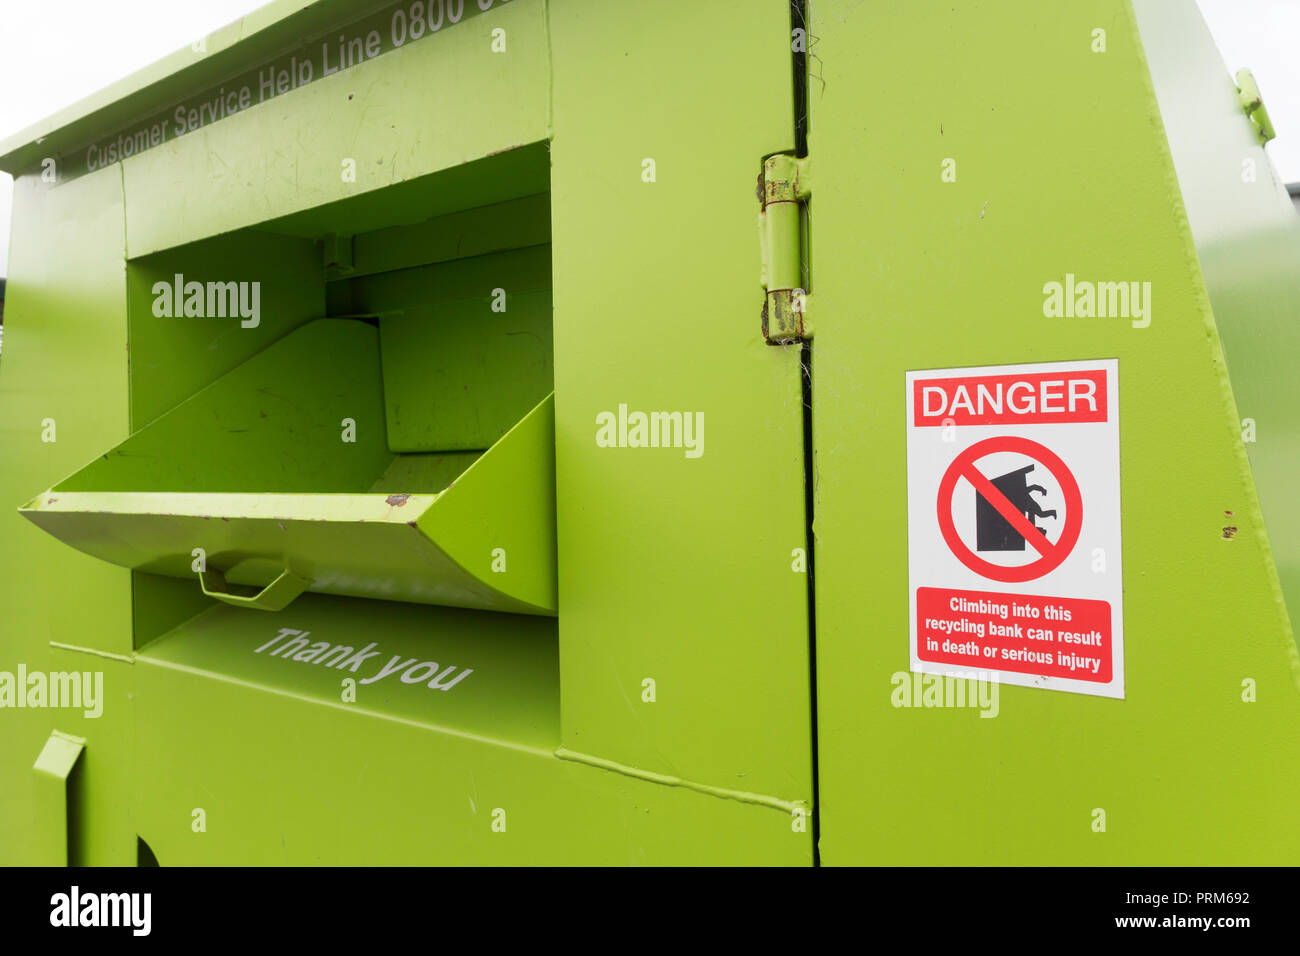 Zeichen, Gefahr, Klettern in dieses Recycling Bank kann zu Tod, Campingplatz Abfall und Recycling center in Wrekenton, Gateshead, England, Großbritannien Stockfoto